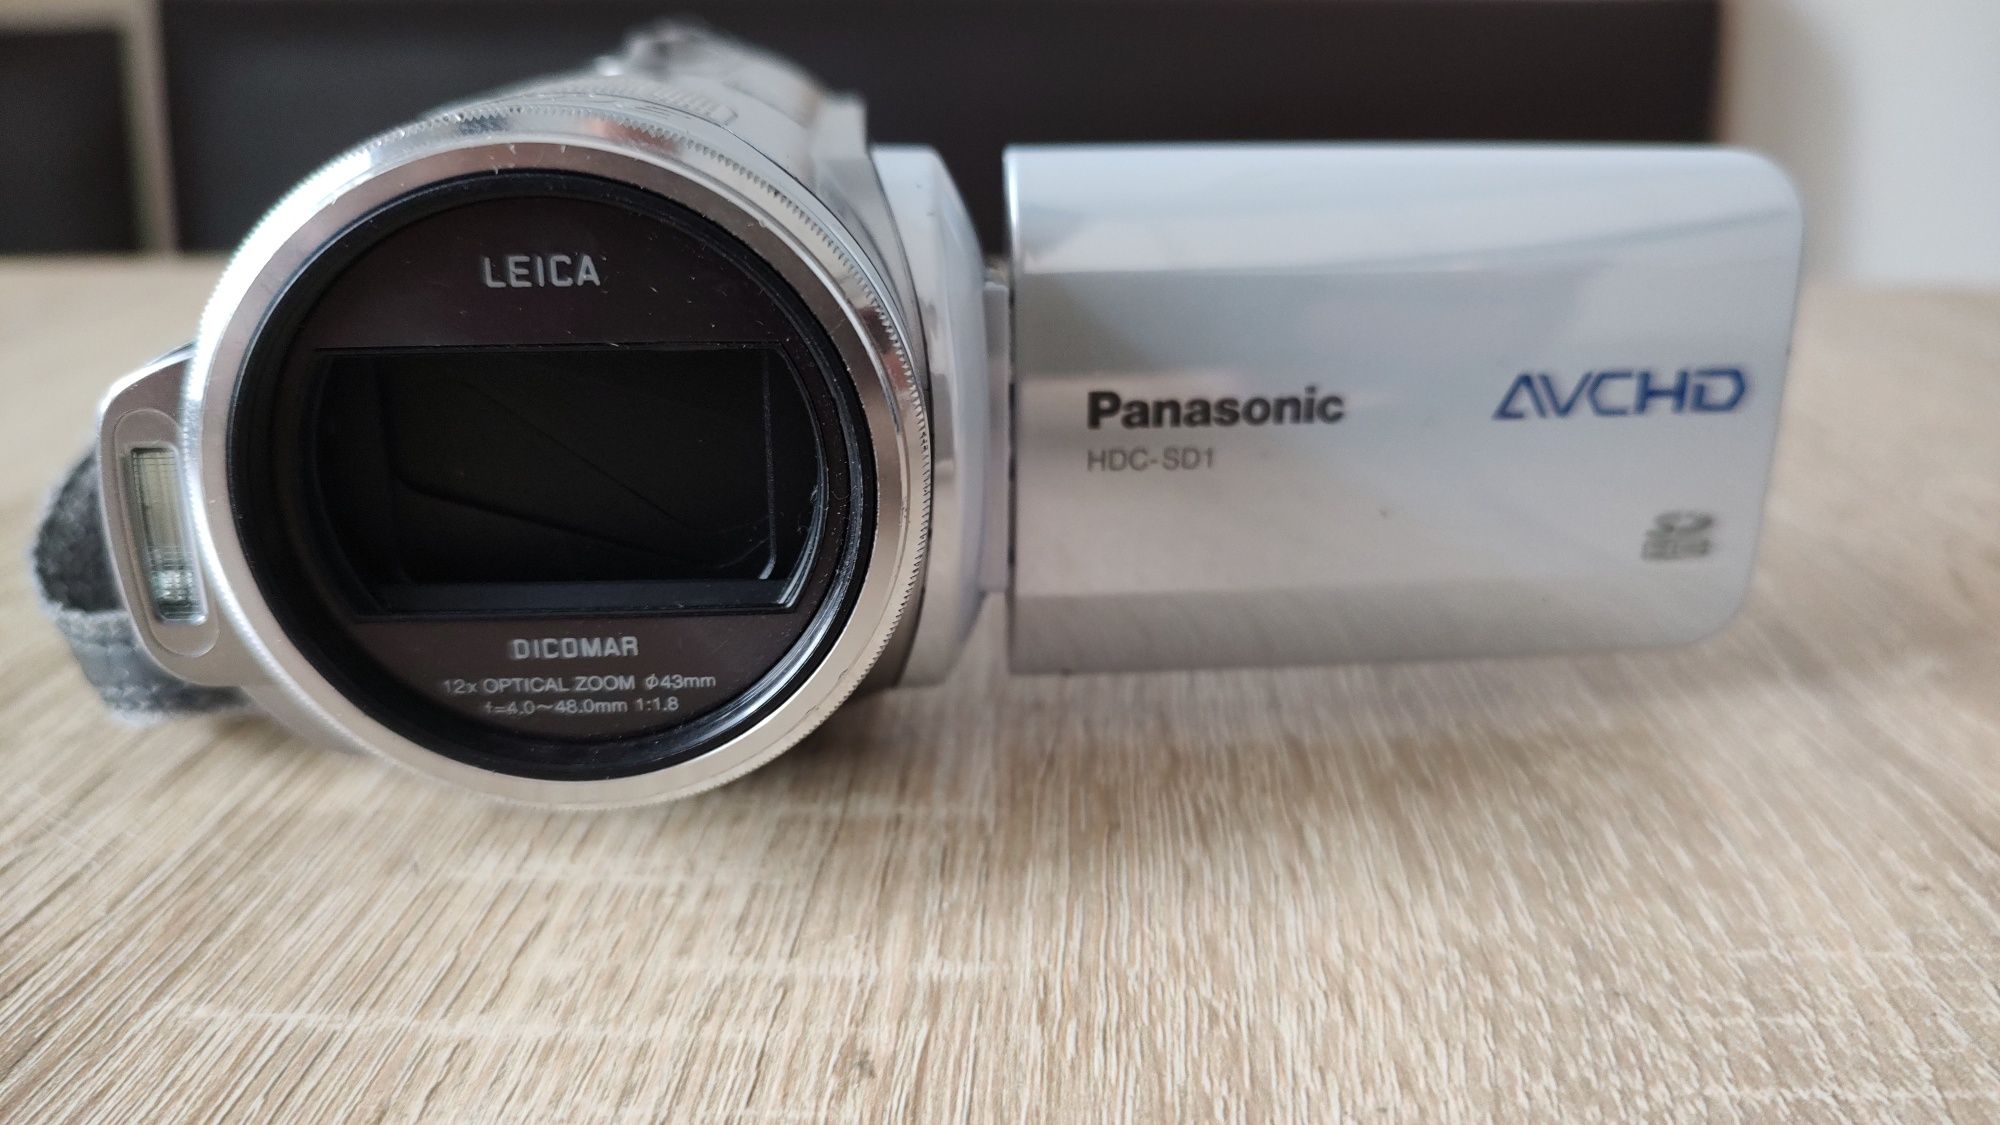 Camera video Panasonic HDC SD1 avchd sd card 3ccd